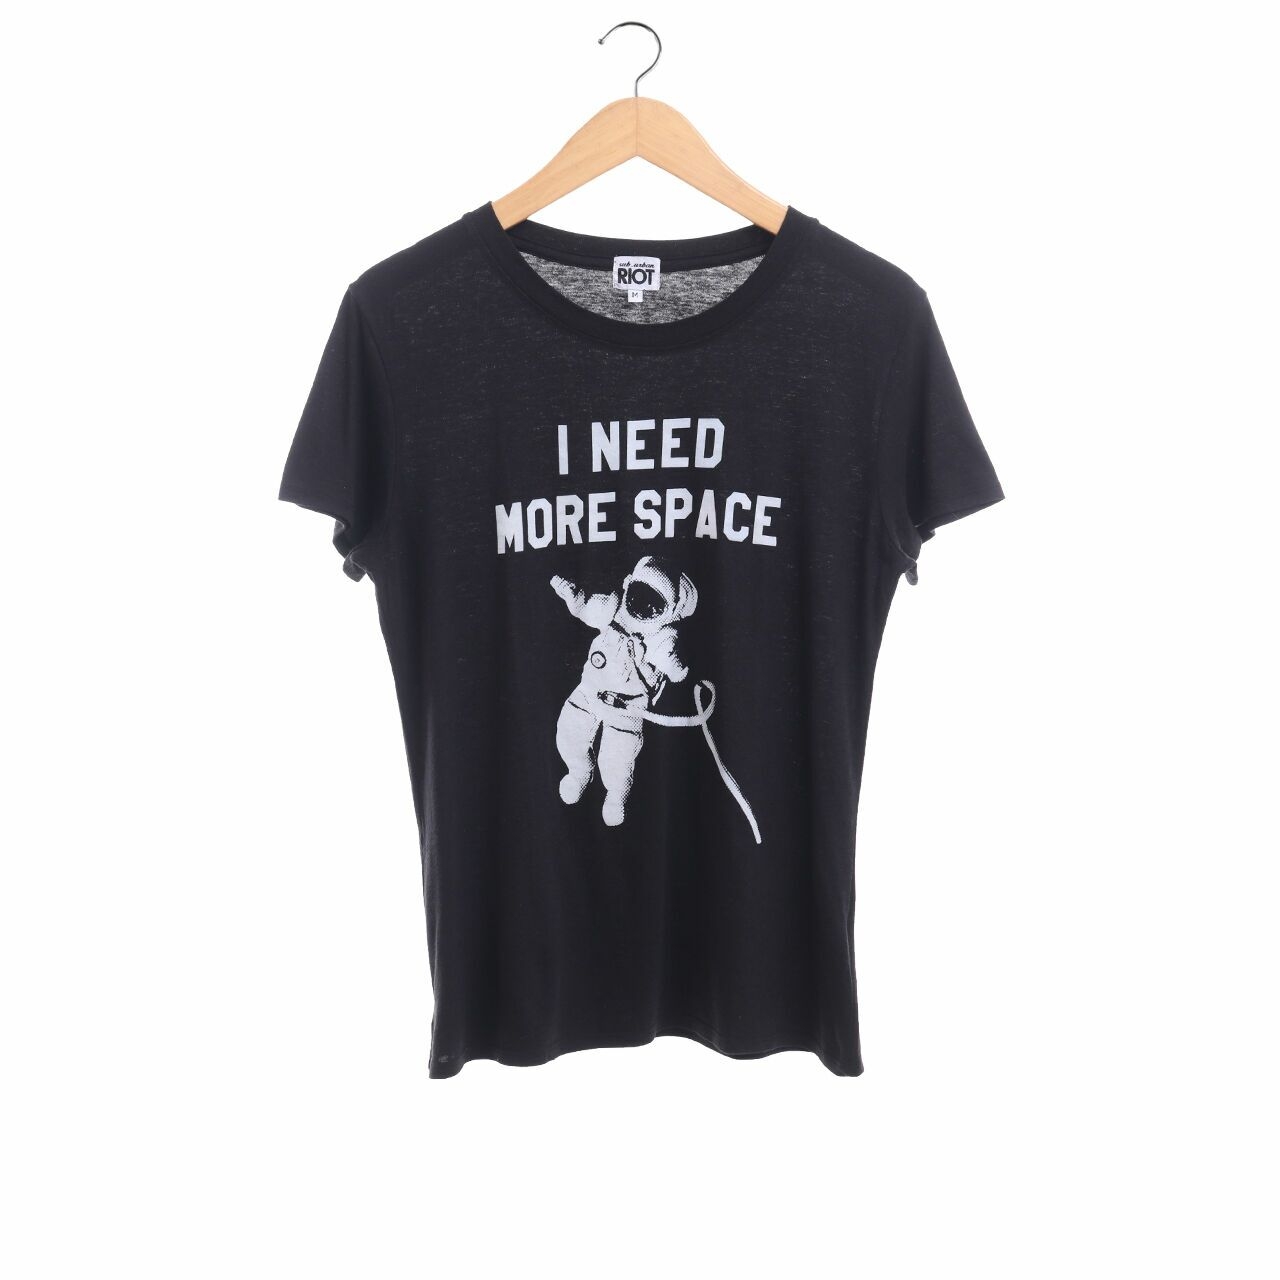 Sub Urban Riot "I Need More Space" Black T-Shirt